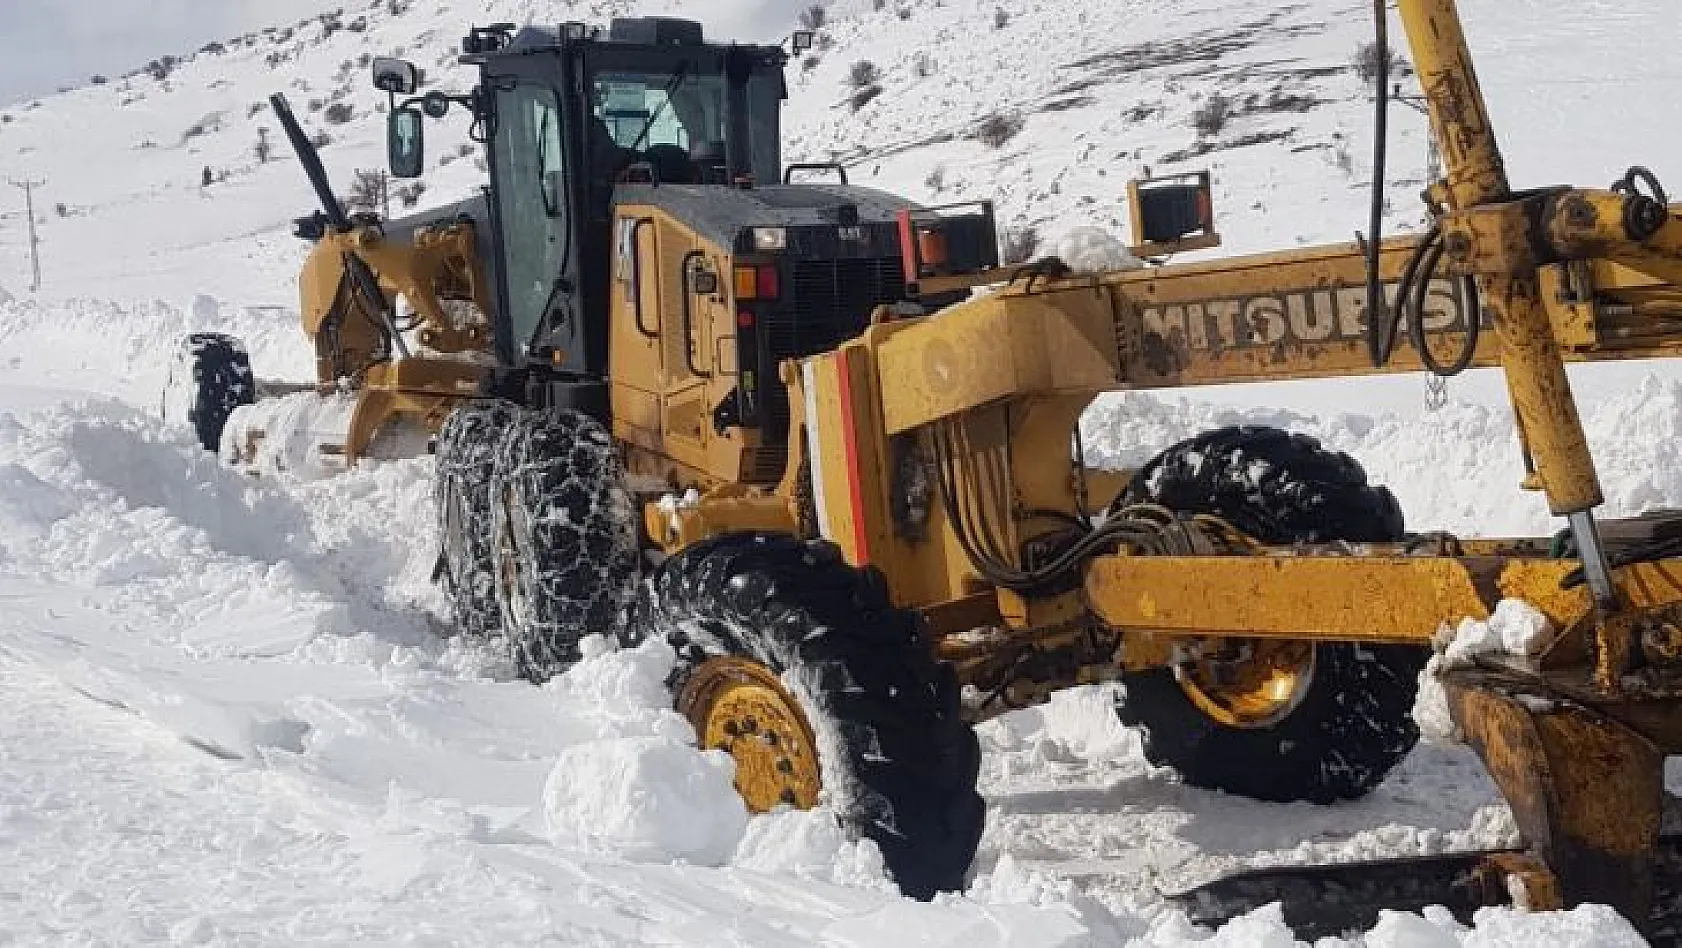 Sarız'da karla mücadele devam ediyor